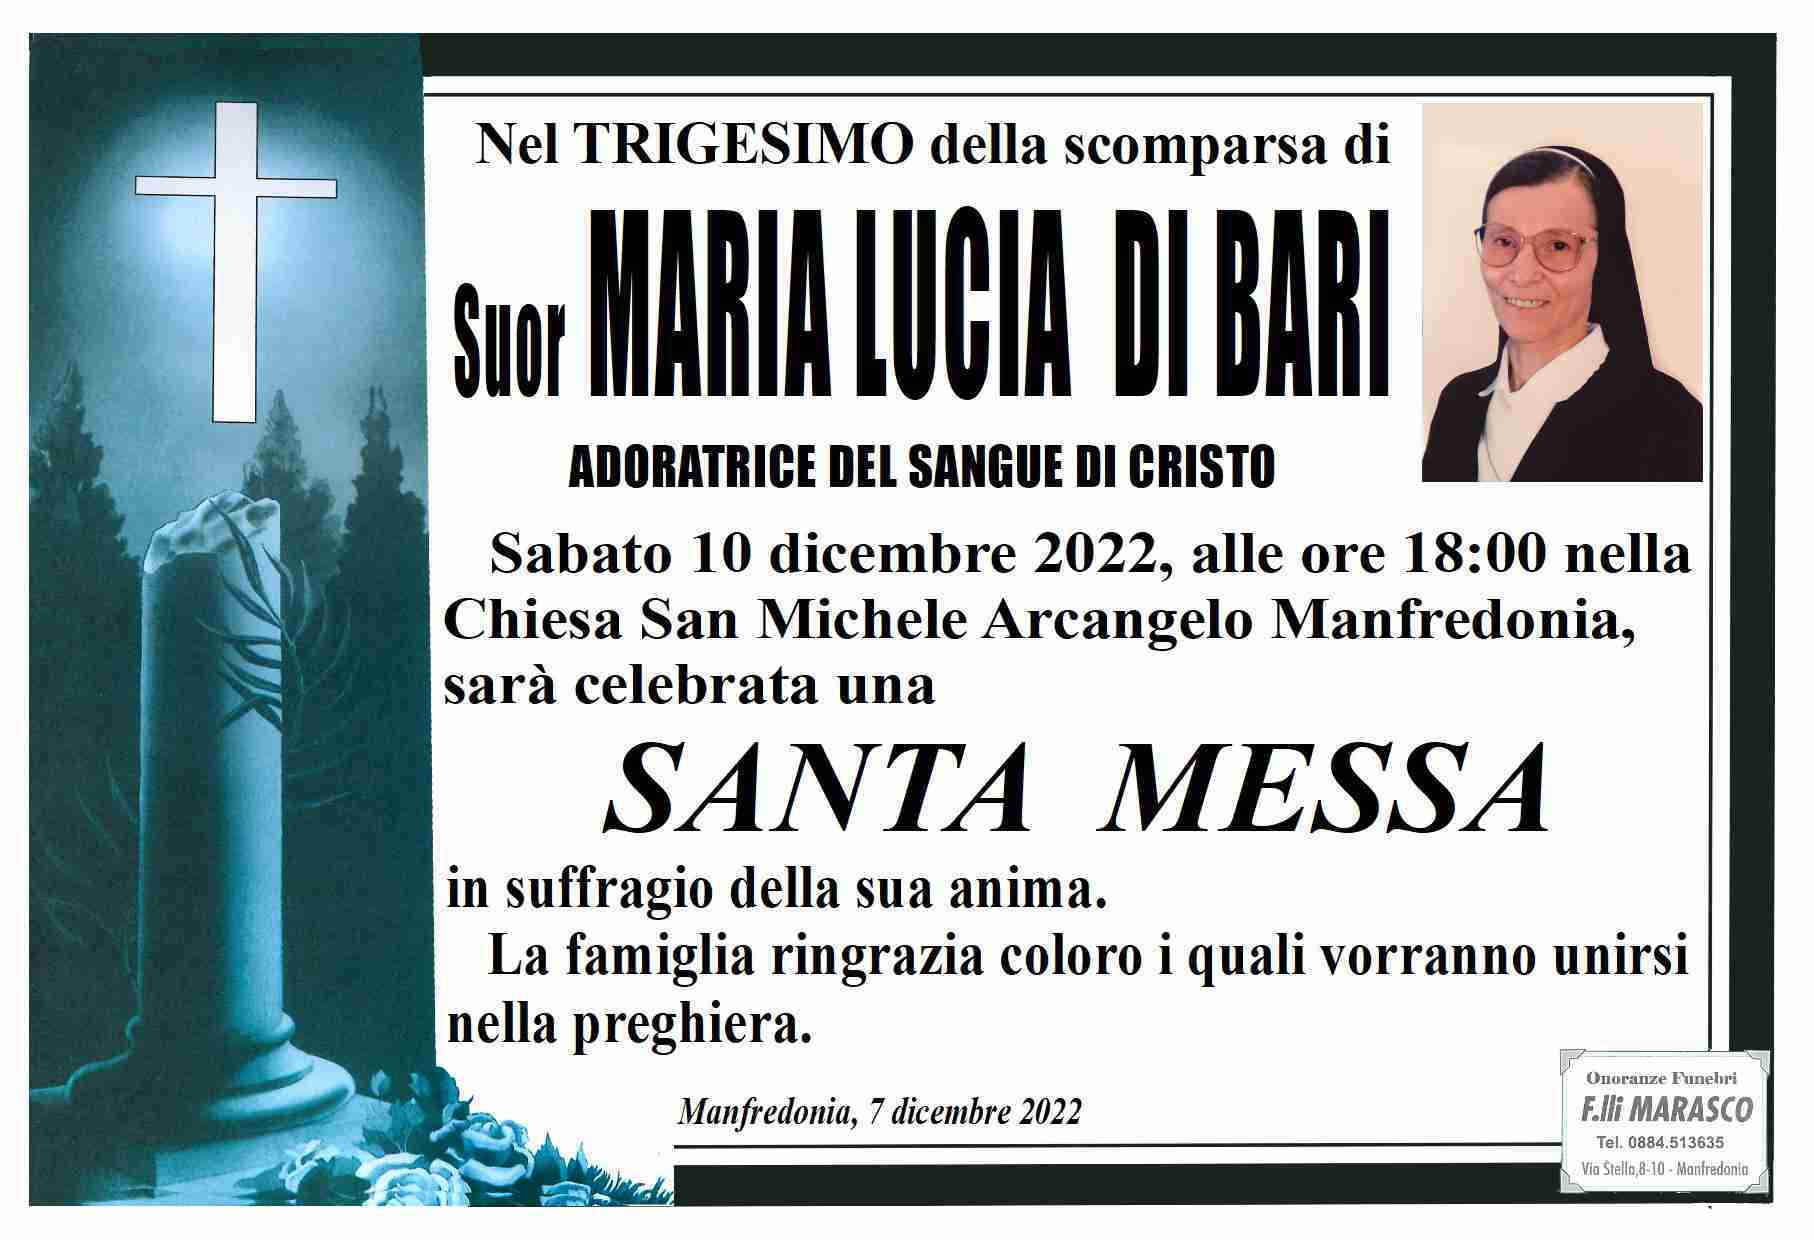 Suor Maria Lucia Di Bari